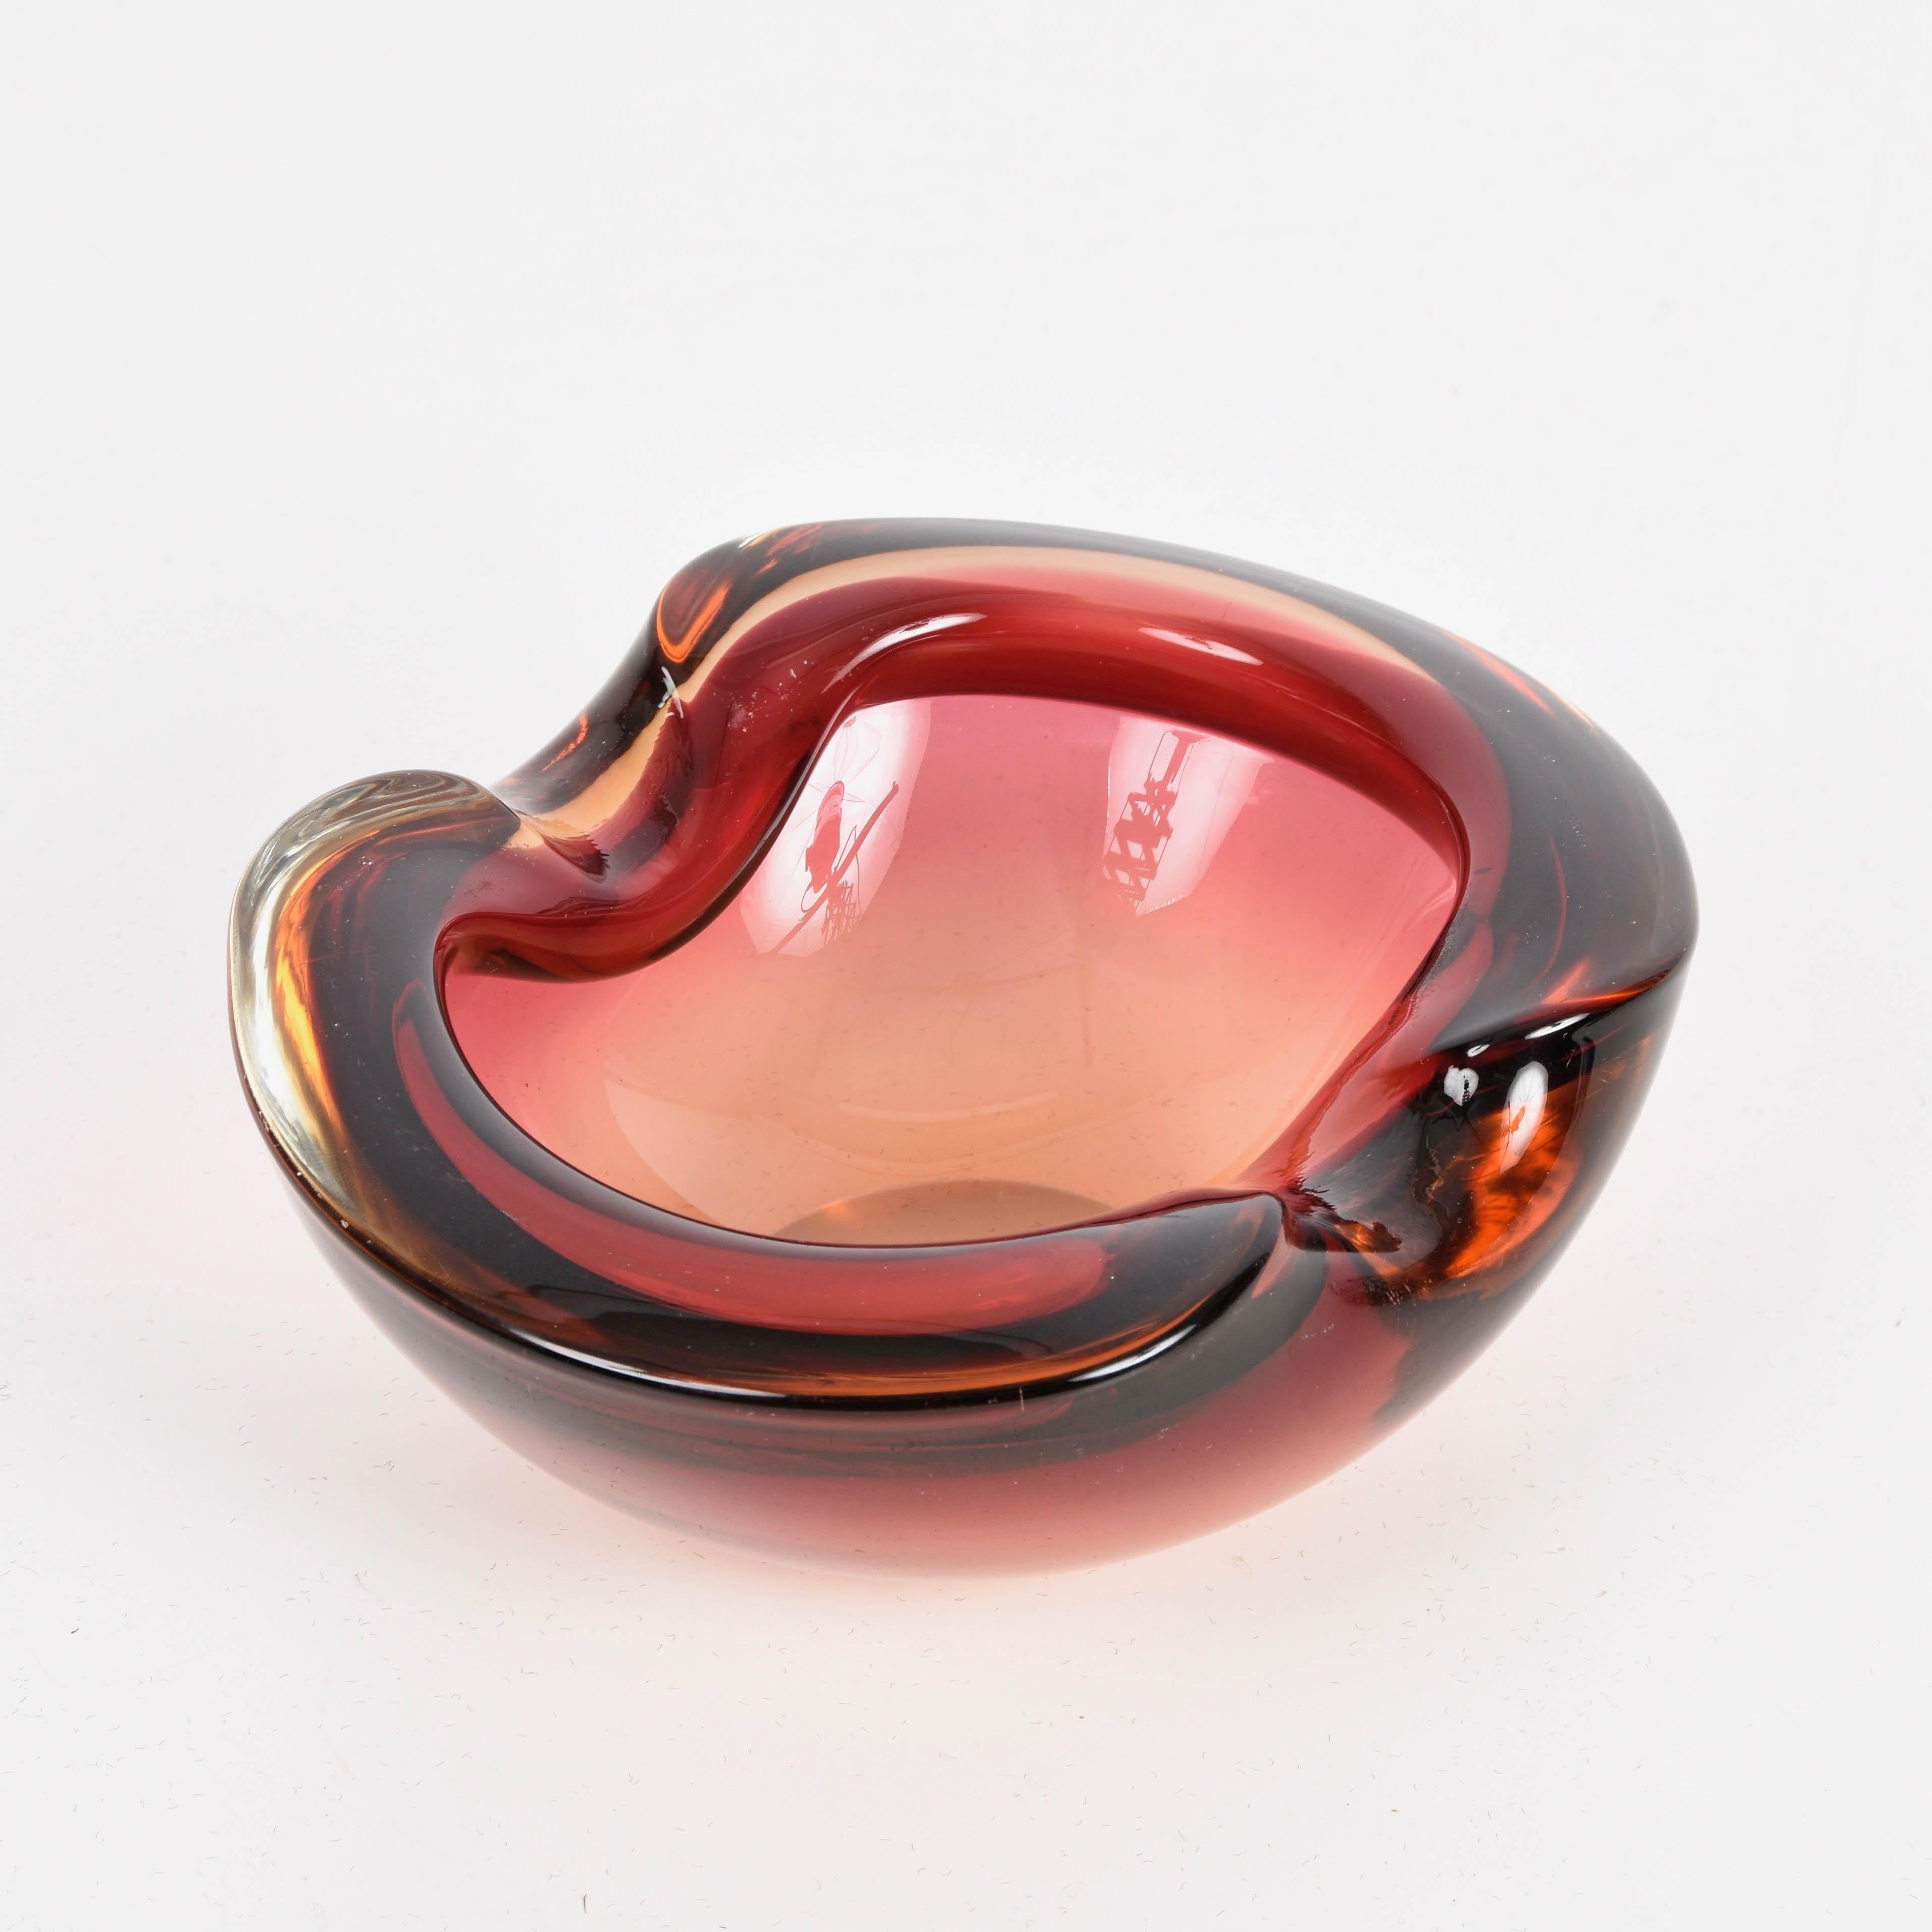 Prächtige herzförmige Schale oder Aschenbecher aus rubinrotem Murano-Glas und Kristall von Sommerso. Dieses erstaunliche Stück wurde in den 1960er Jahren in Italien hergestellt.

Dieses wunderbare Stück ist eine perfekte Mischung aus geschwungenen